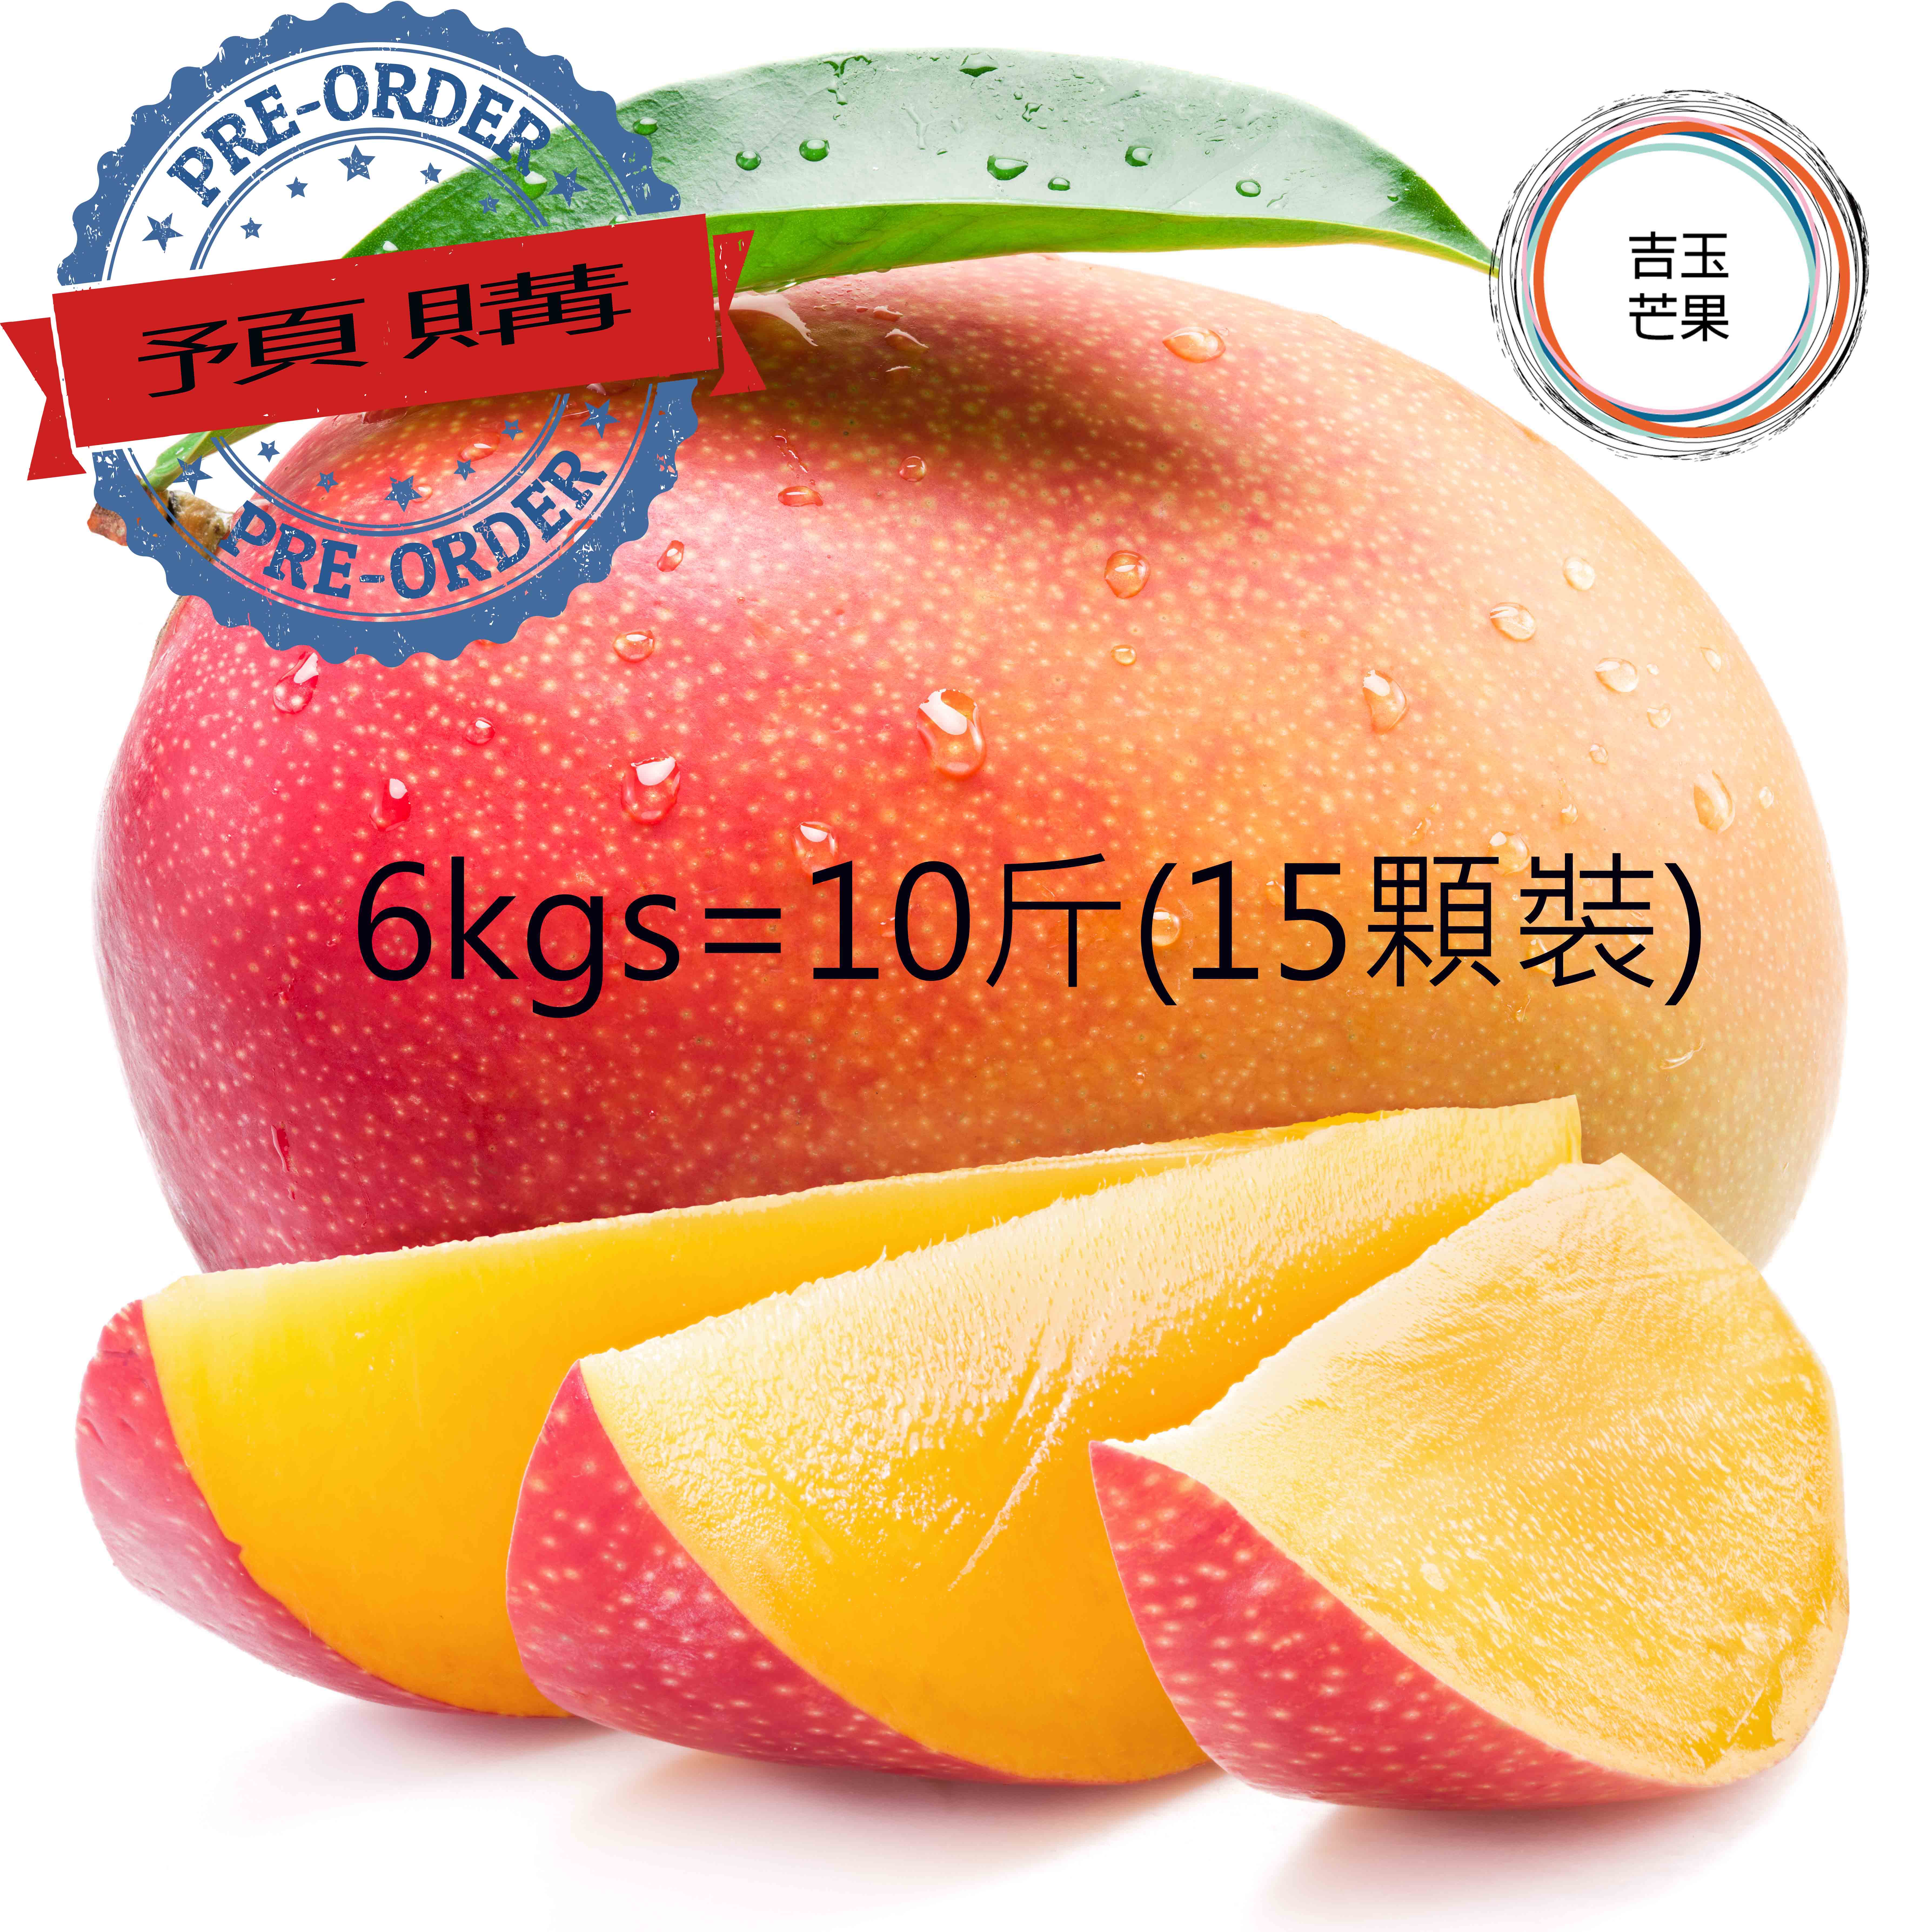 屏東枋山愛文芒果果 外銷日本產地 吉園圃認證 マンゴー mango [預購免運 ](10斤 /15 顆)